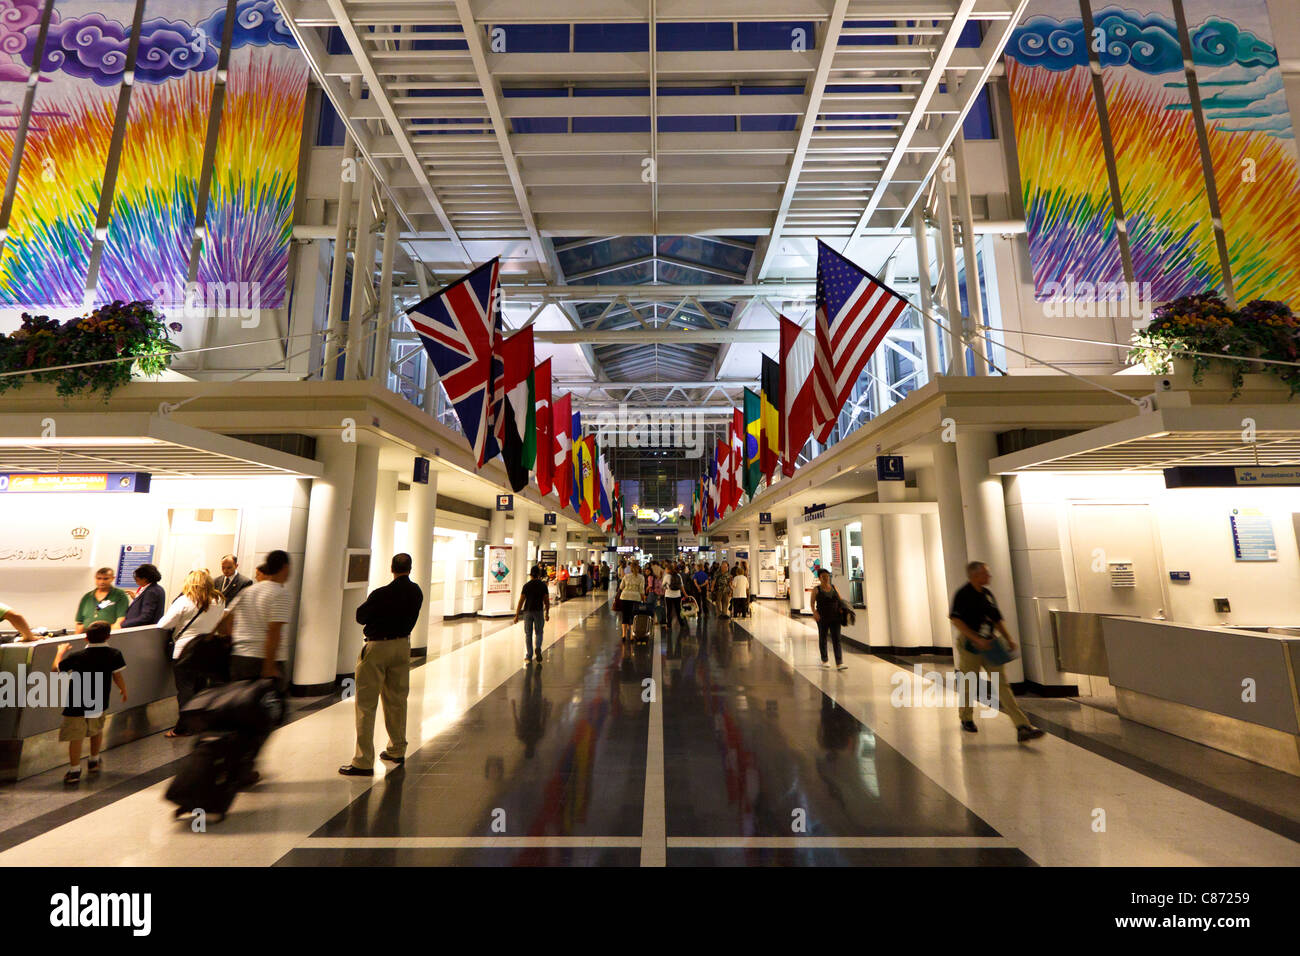 Vue à l'intérieur O'Hare International Airport Terminal 5 montrant les drapeaux de différents pays - Chicago, IL Banque D'Images